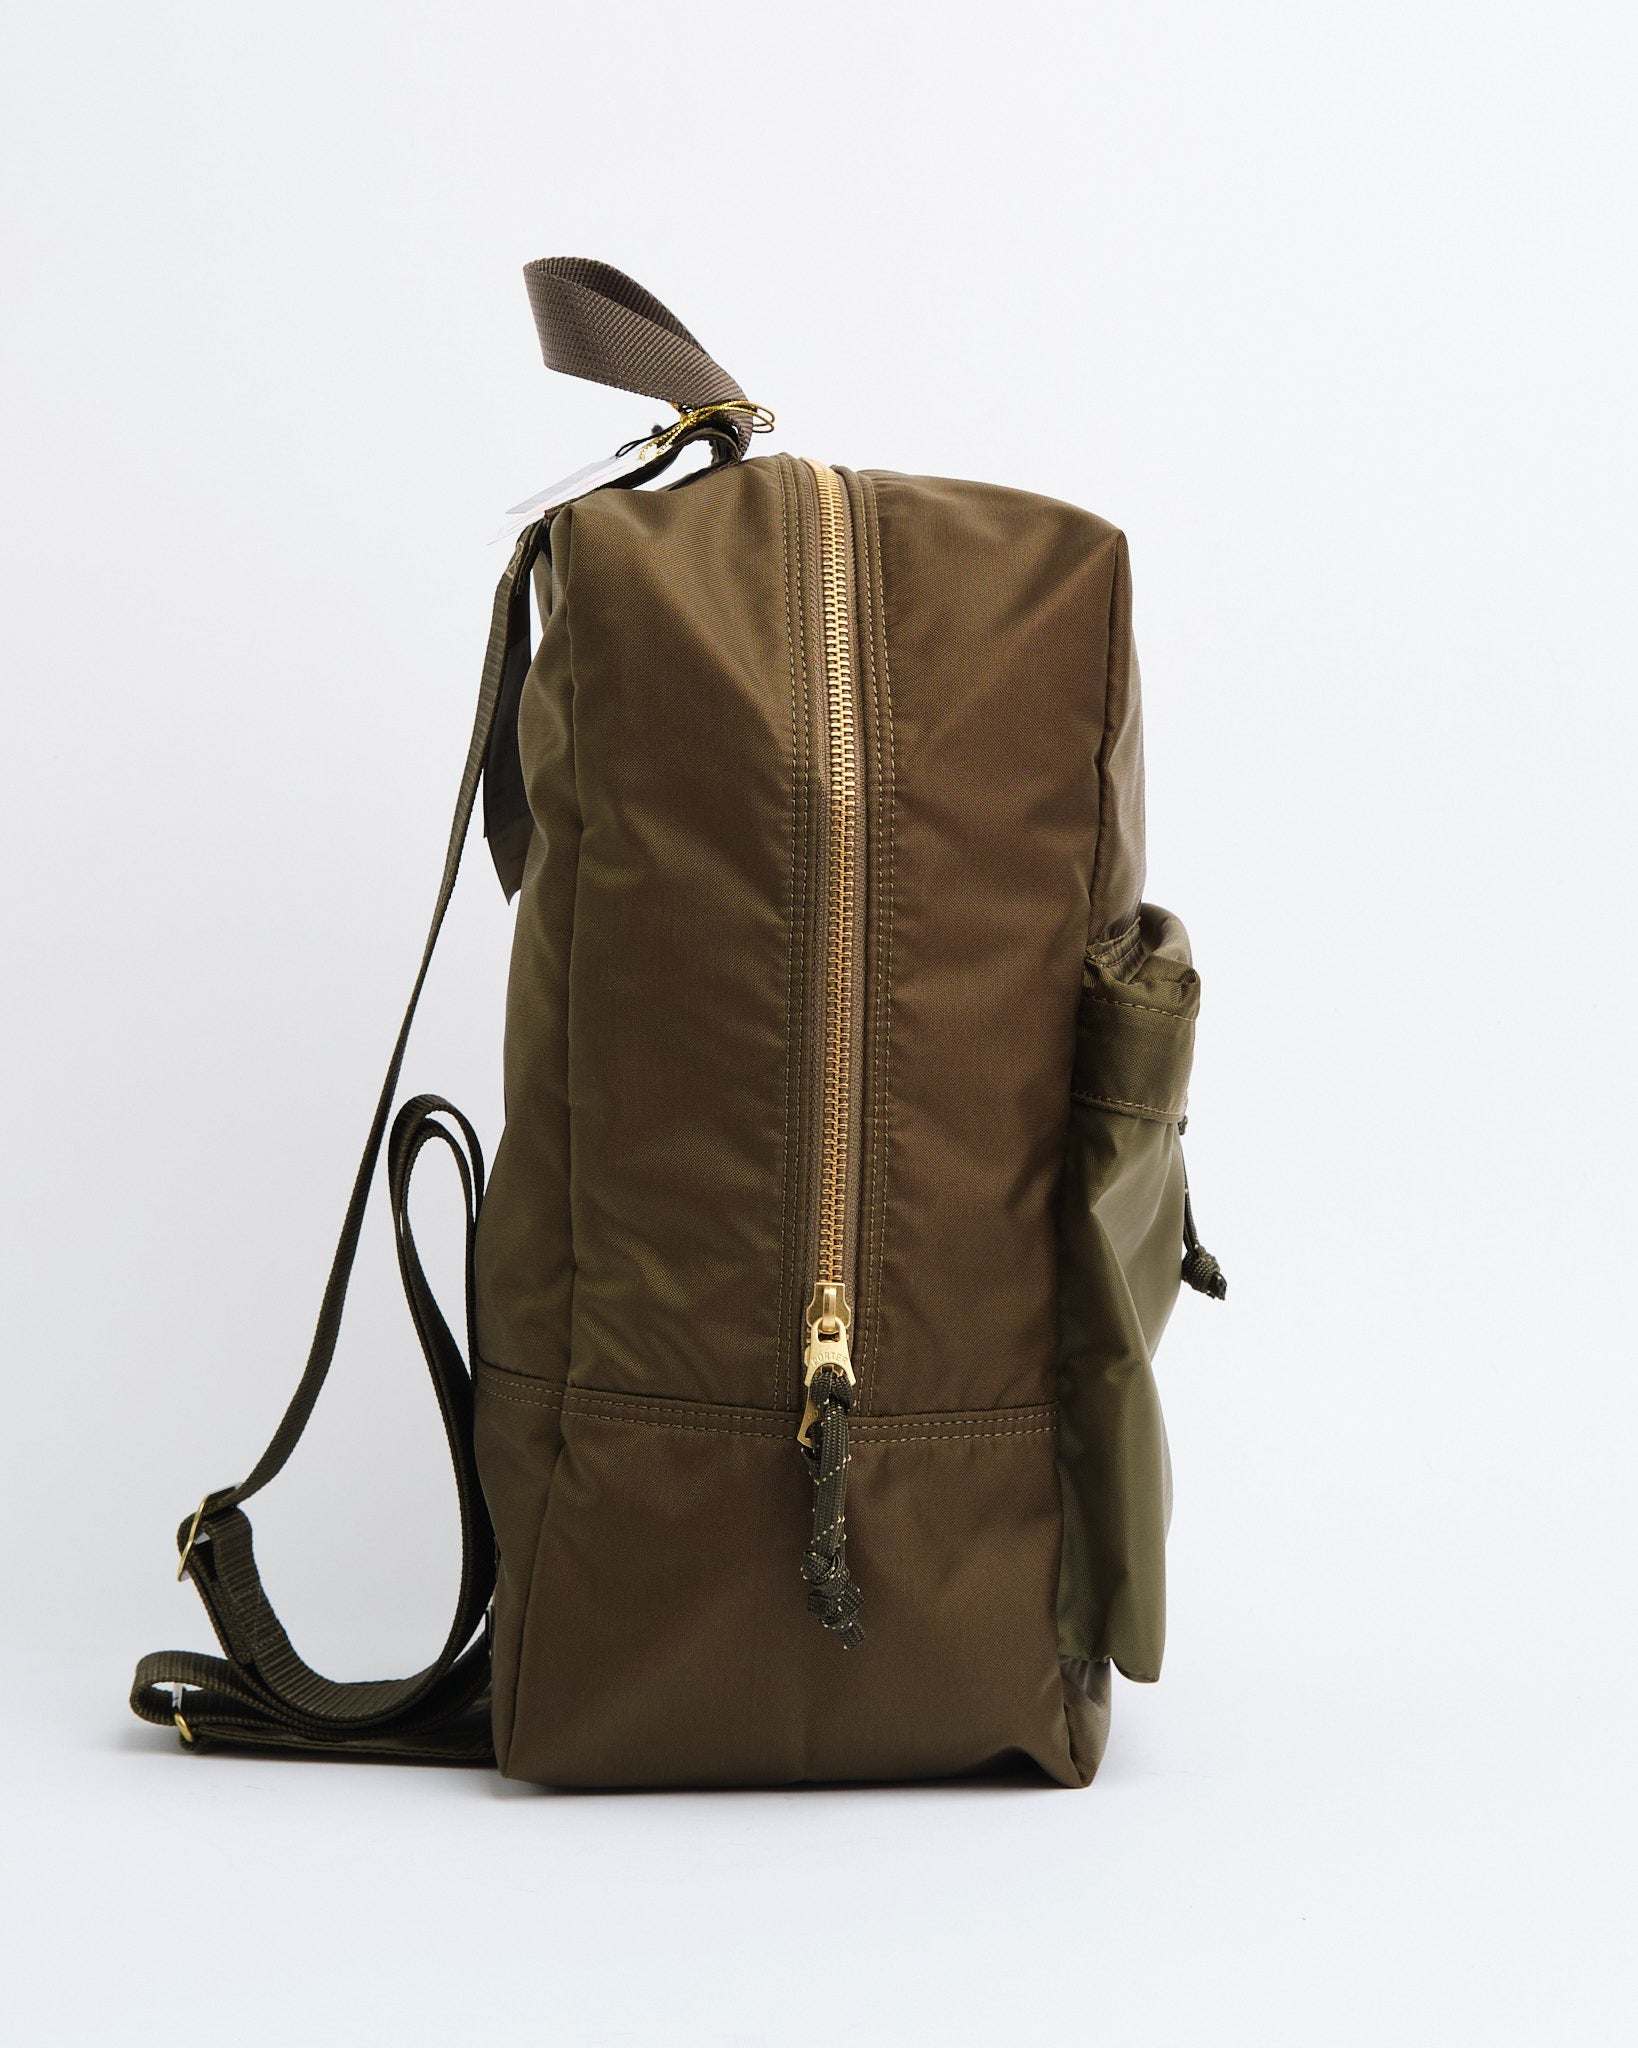 Force Sling Shoulder Bag Olive Drab - Meadow